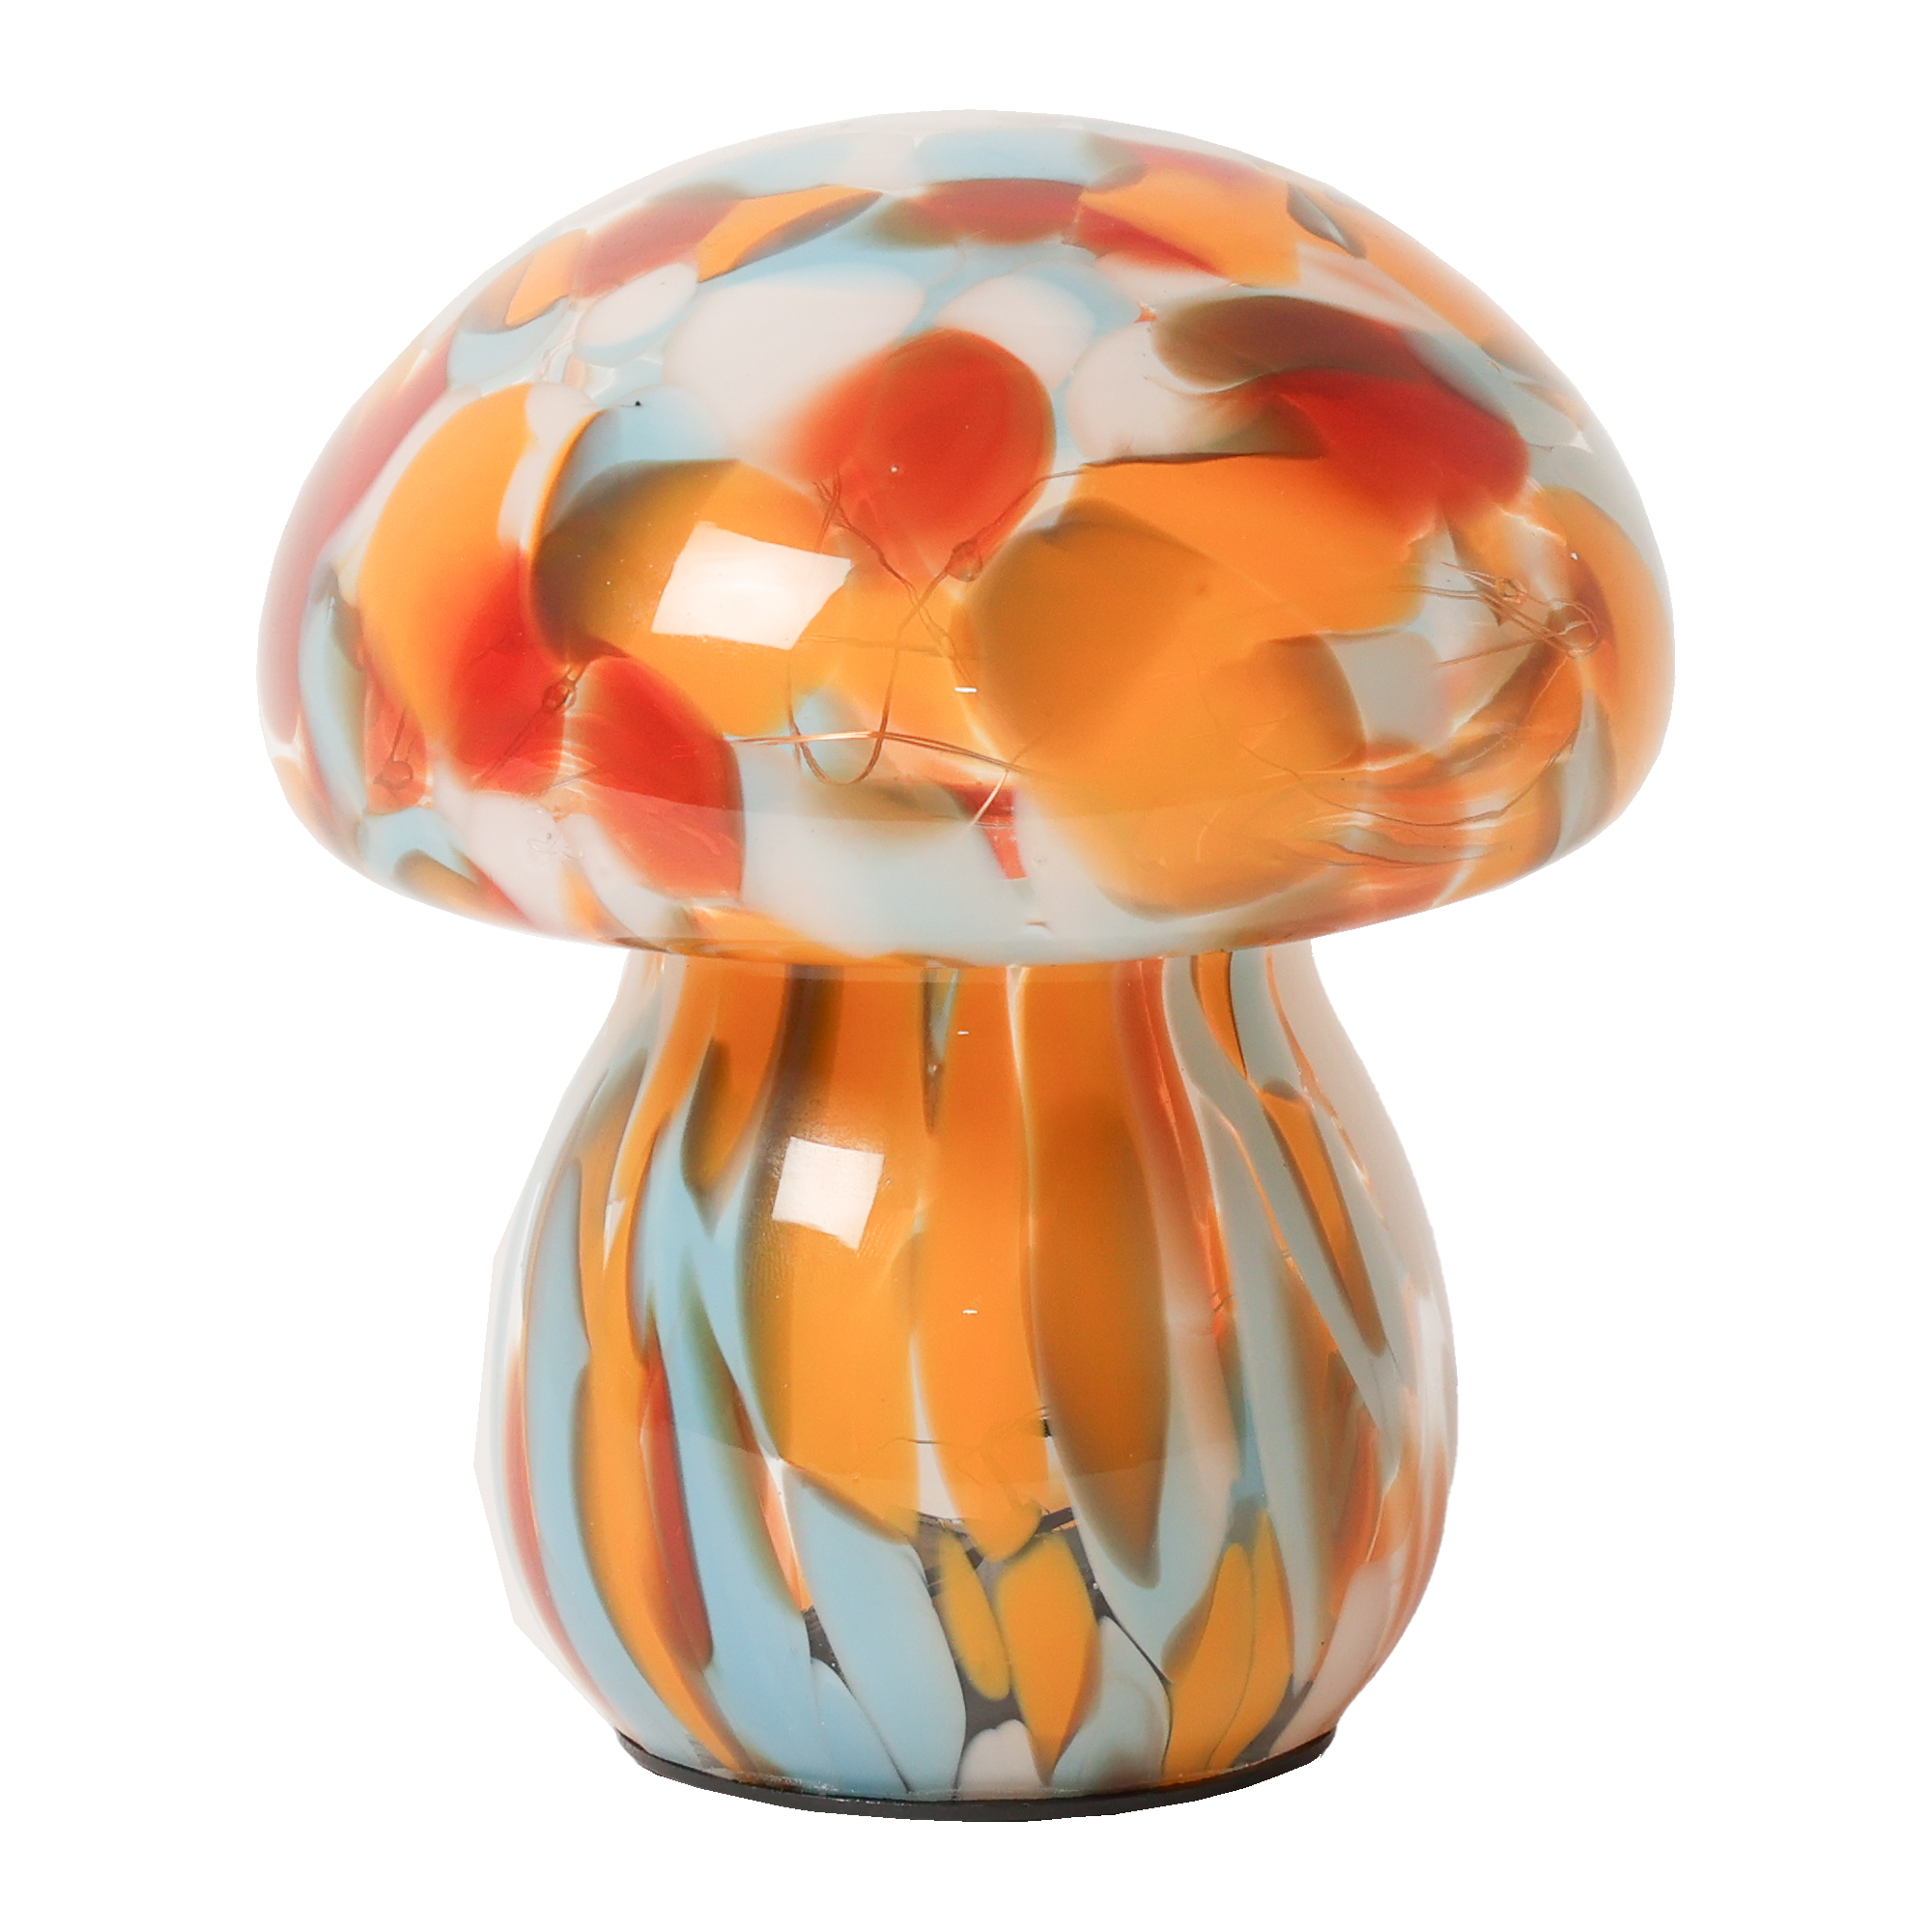 Billede af Mushroom lampe i glas, rød/orange/lys blå